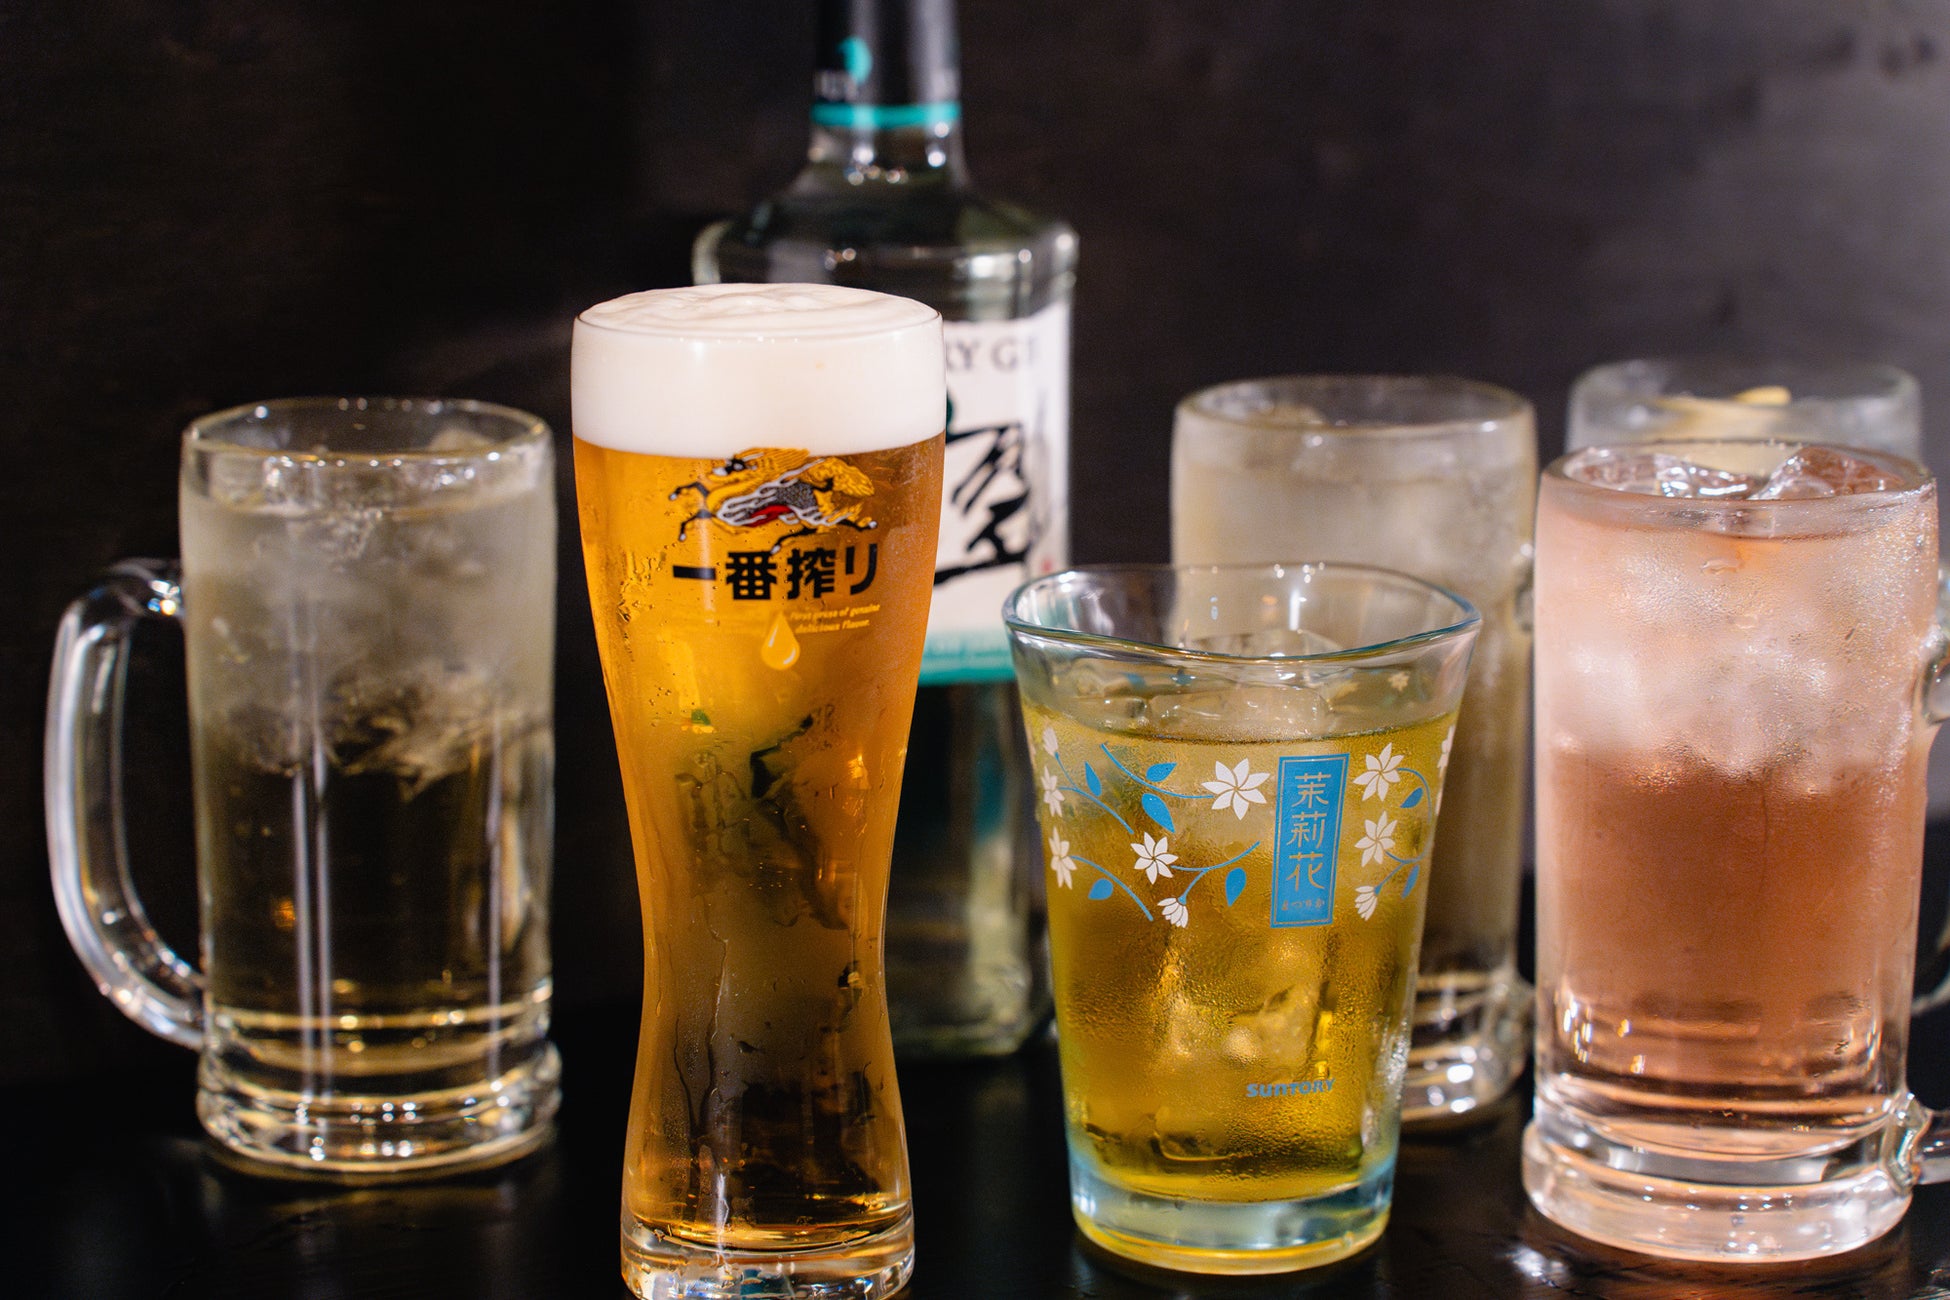 ビール1杯100円で飲める!愛知県幸田町のお好み焼き屋さんでオトクなキャンペーンを開催。